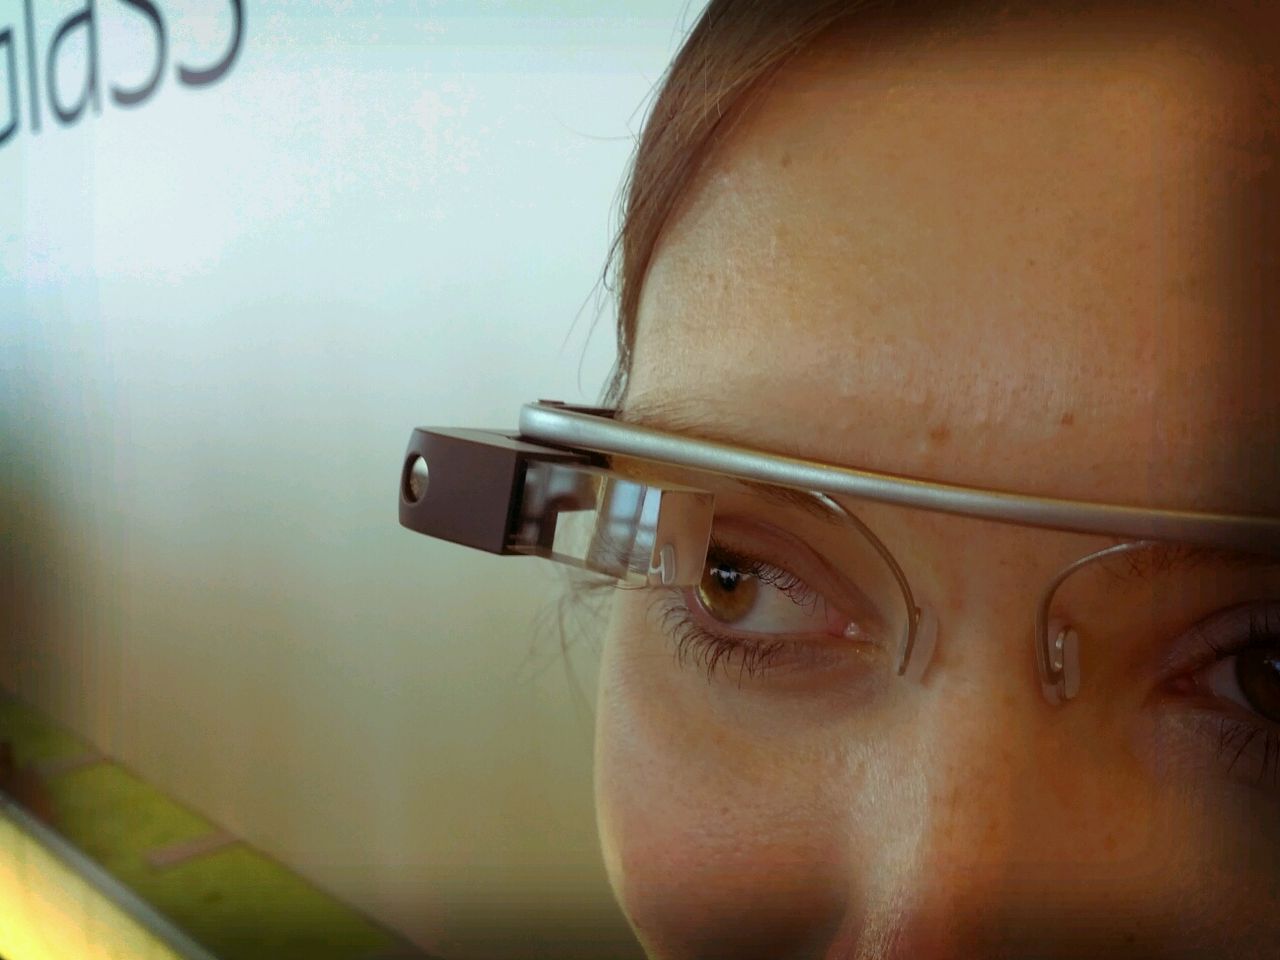 A Google Glass user